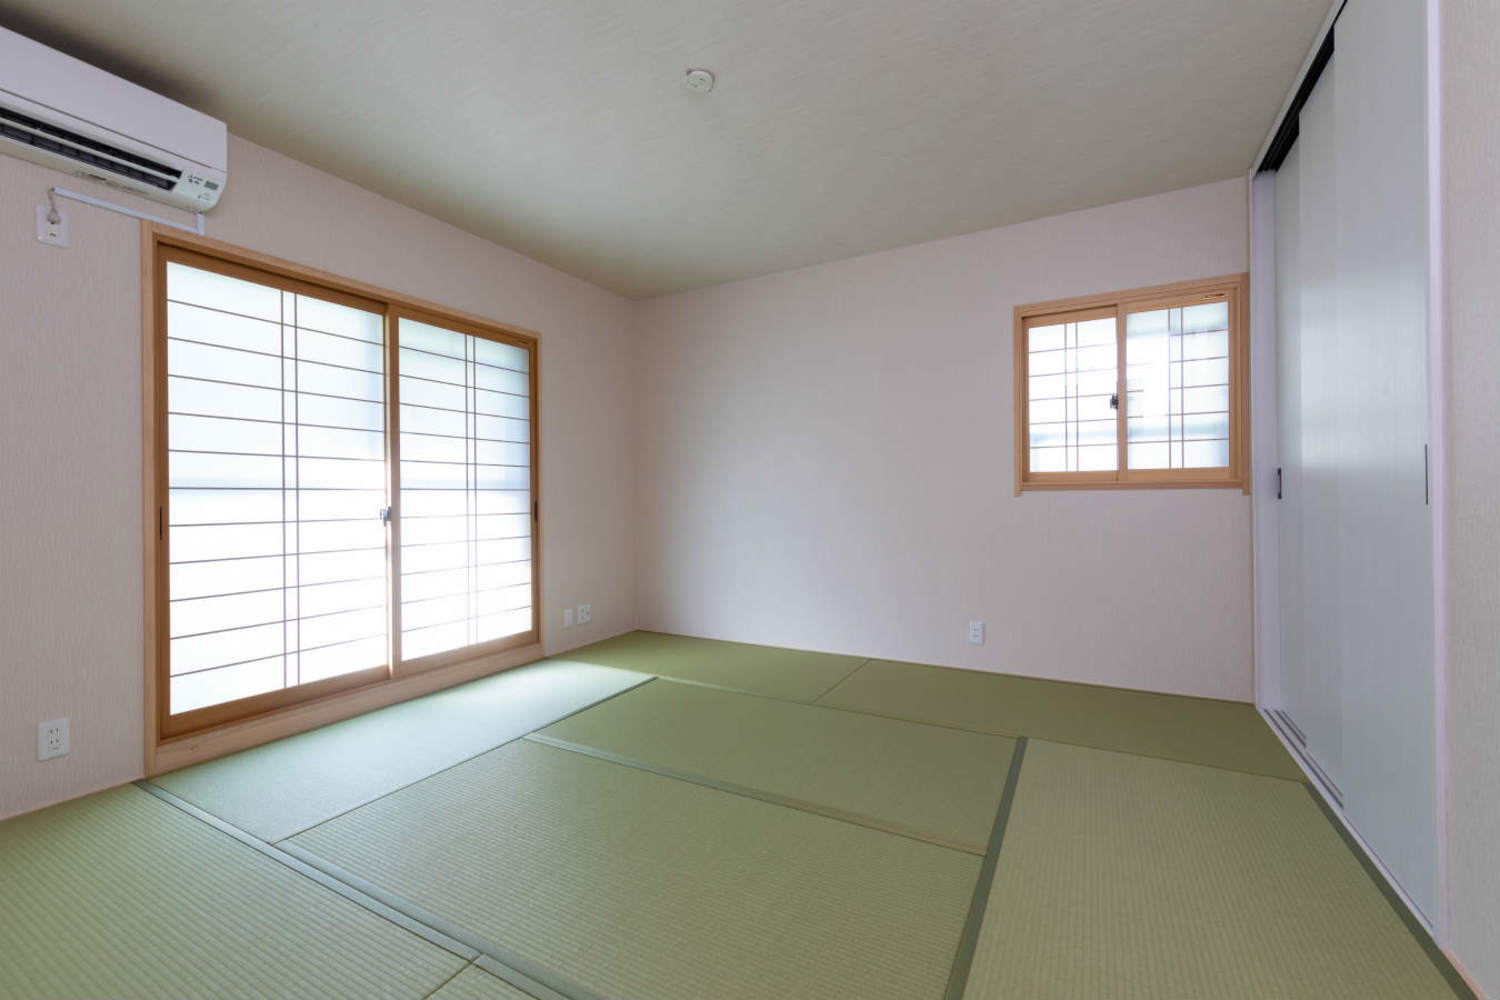 和の趣を大切にした和室。畳は、健康に配慮したダイケン畳健やかくんを採用。